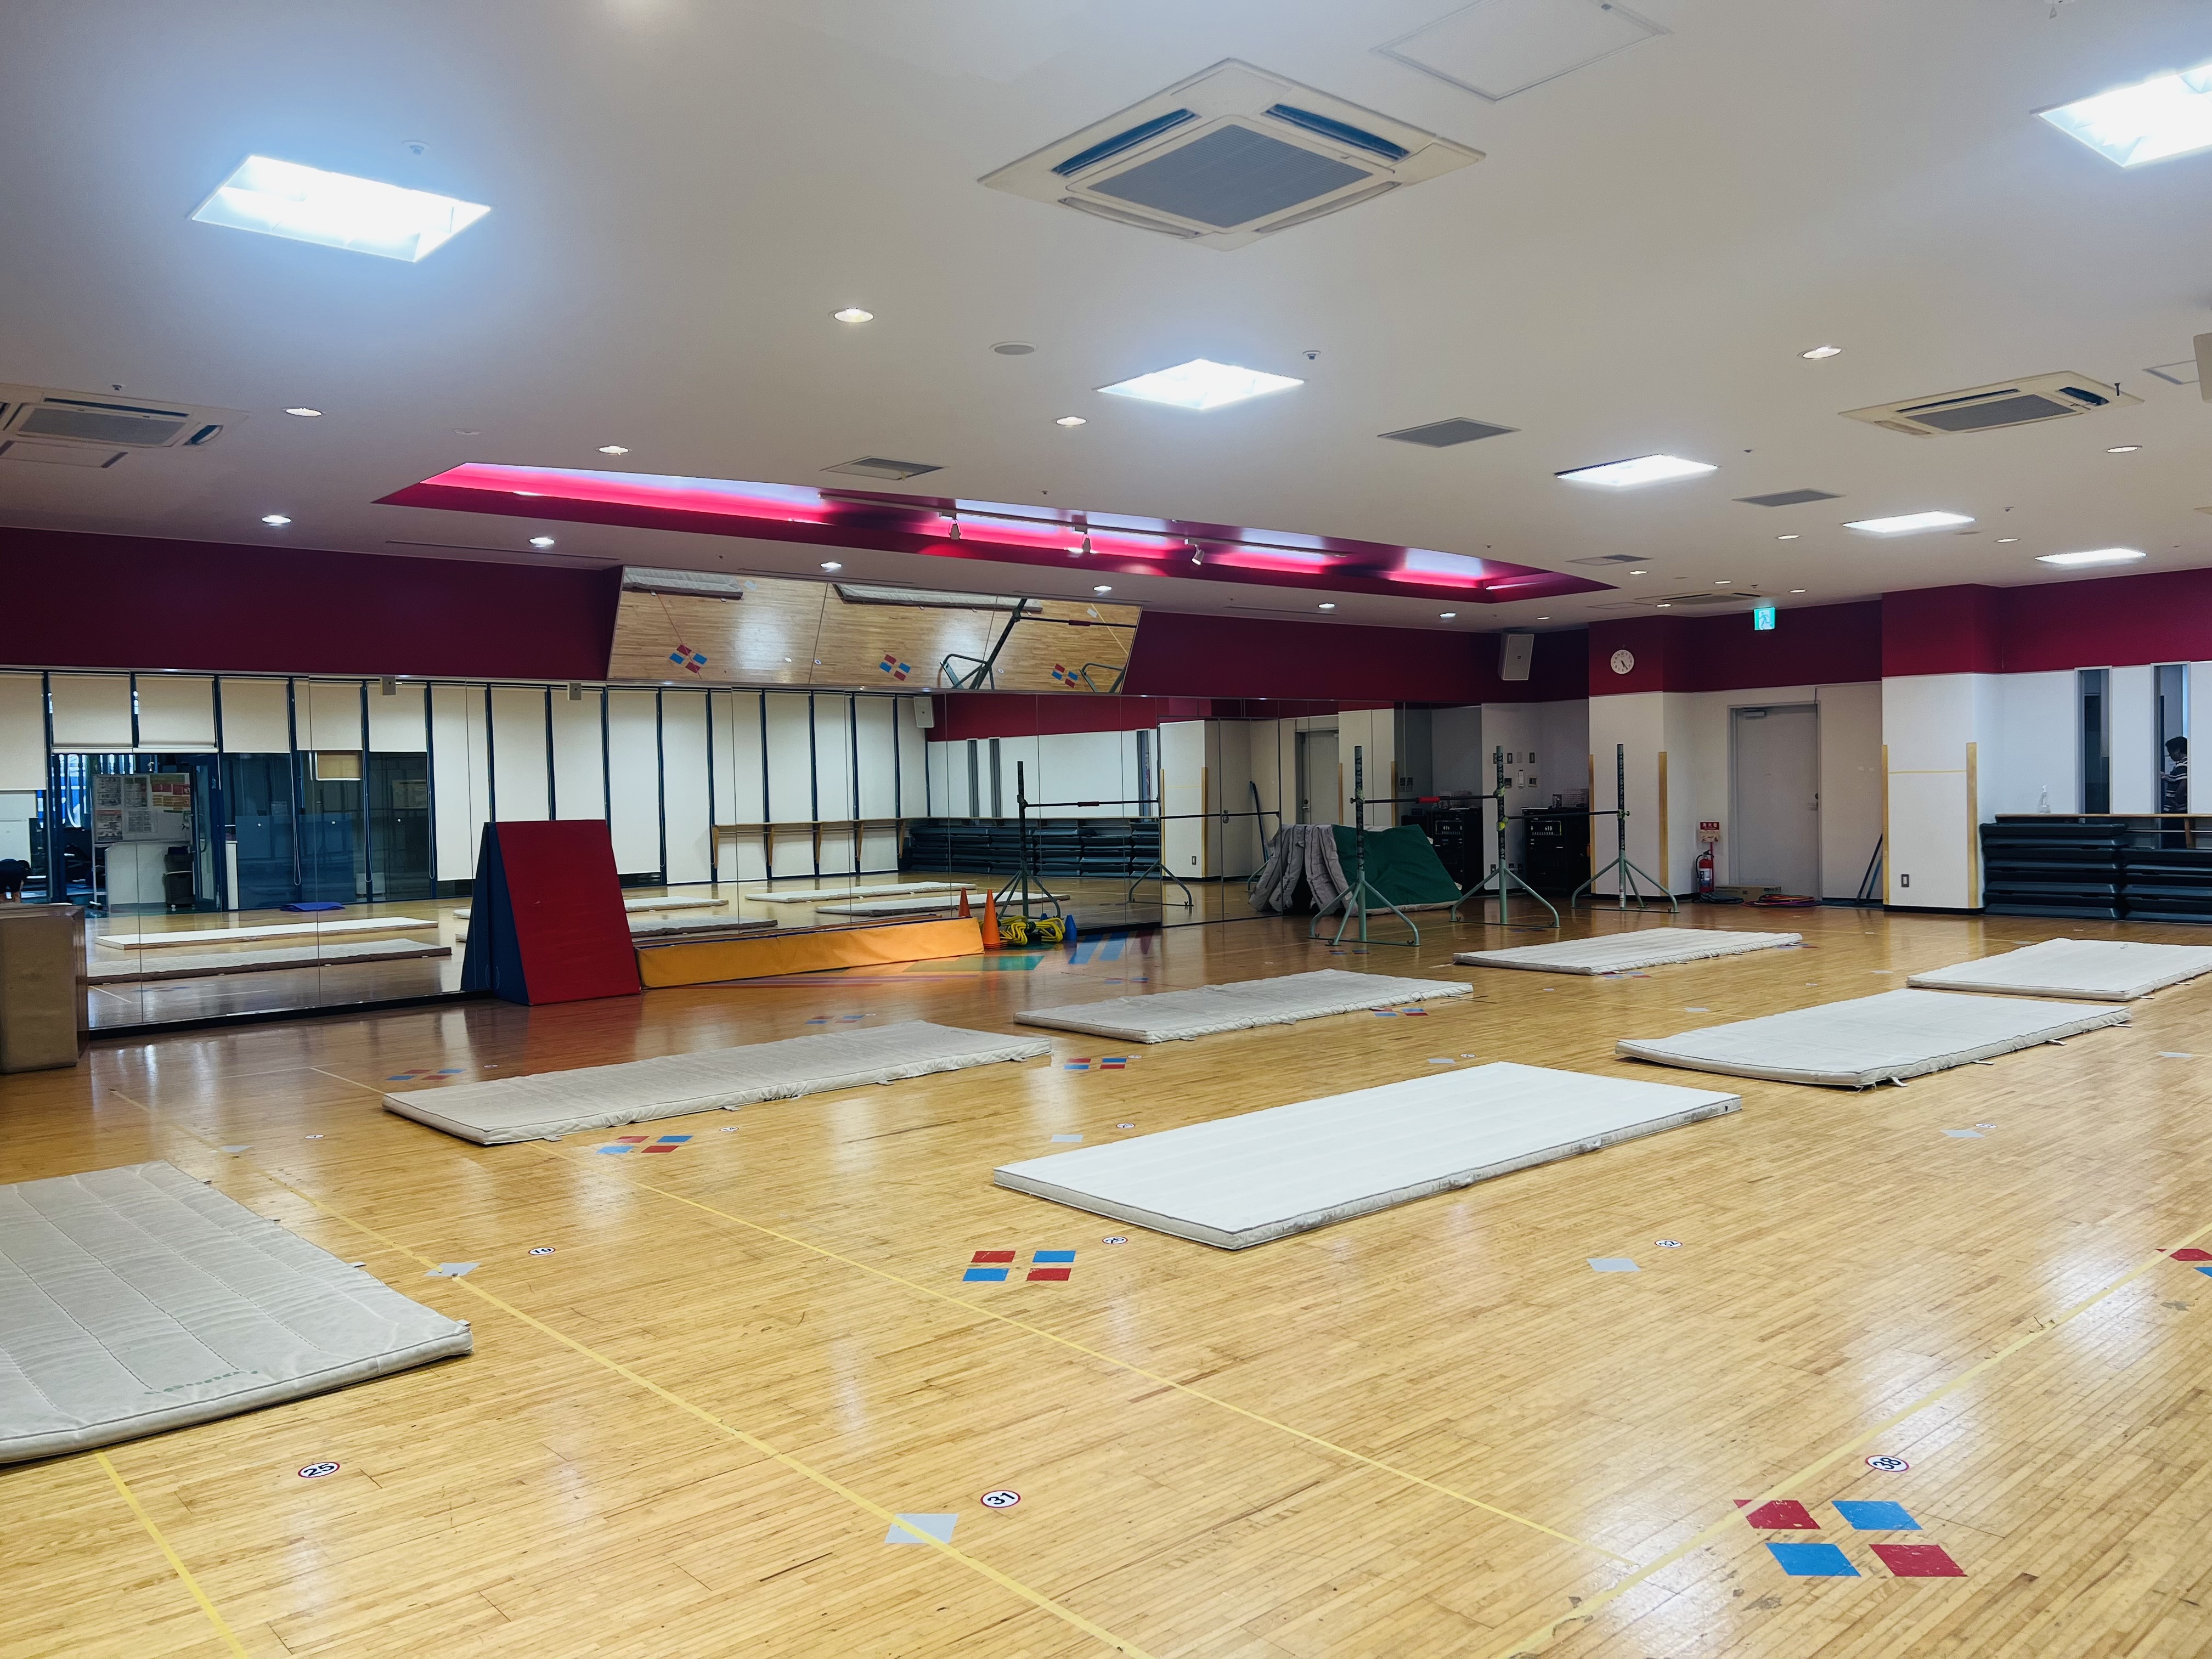 【第1スタジオ 体育】キッズ体育スクールを実施するスタジオ 鉄棒・マット・跳び箱を実施！見学可能